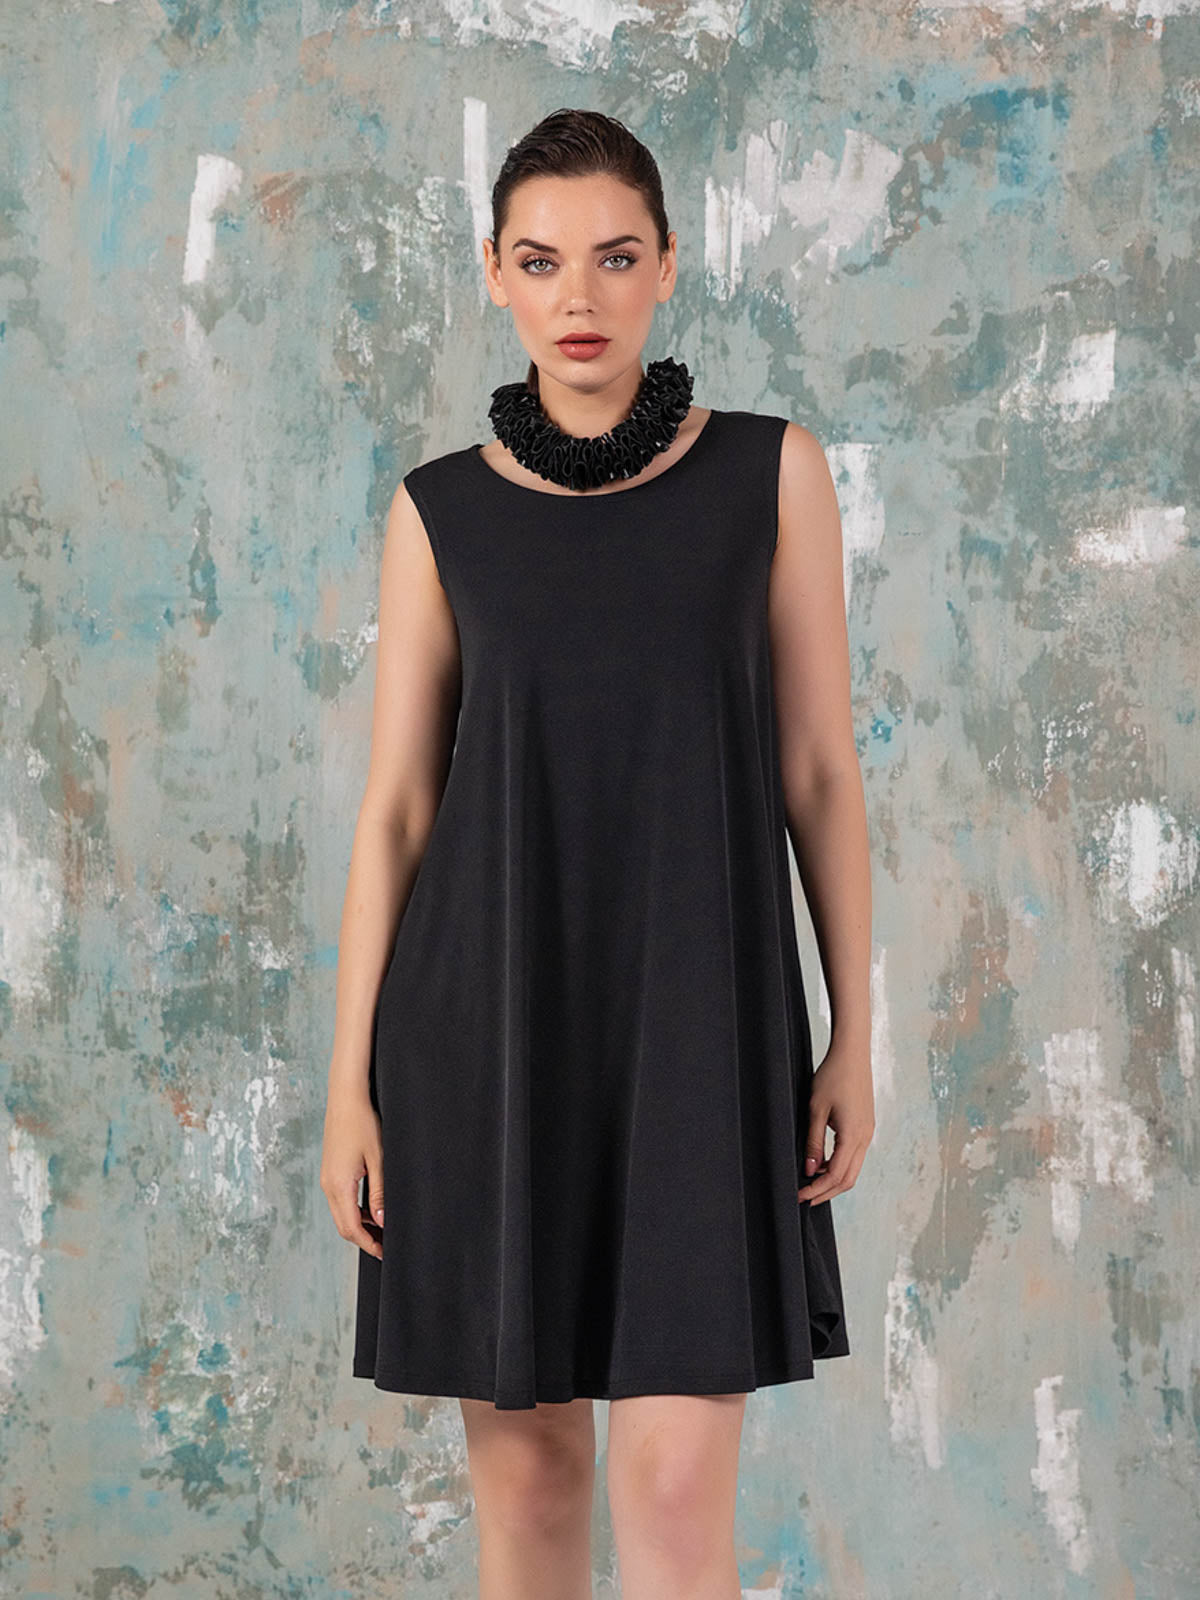 Kozan Dulce Dress, Black Vogue - Statement Boutique